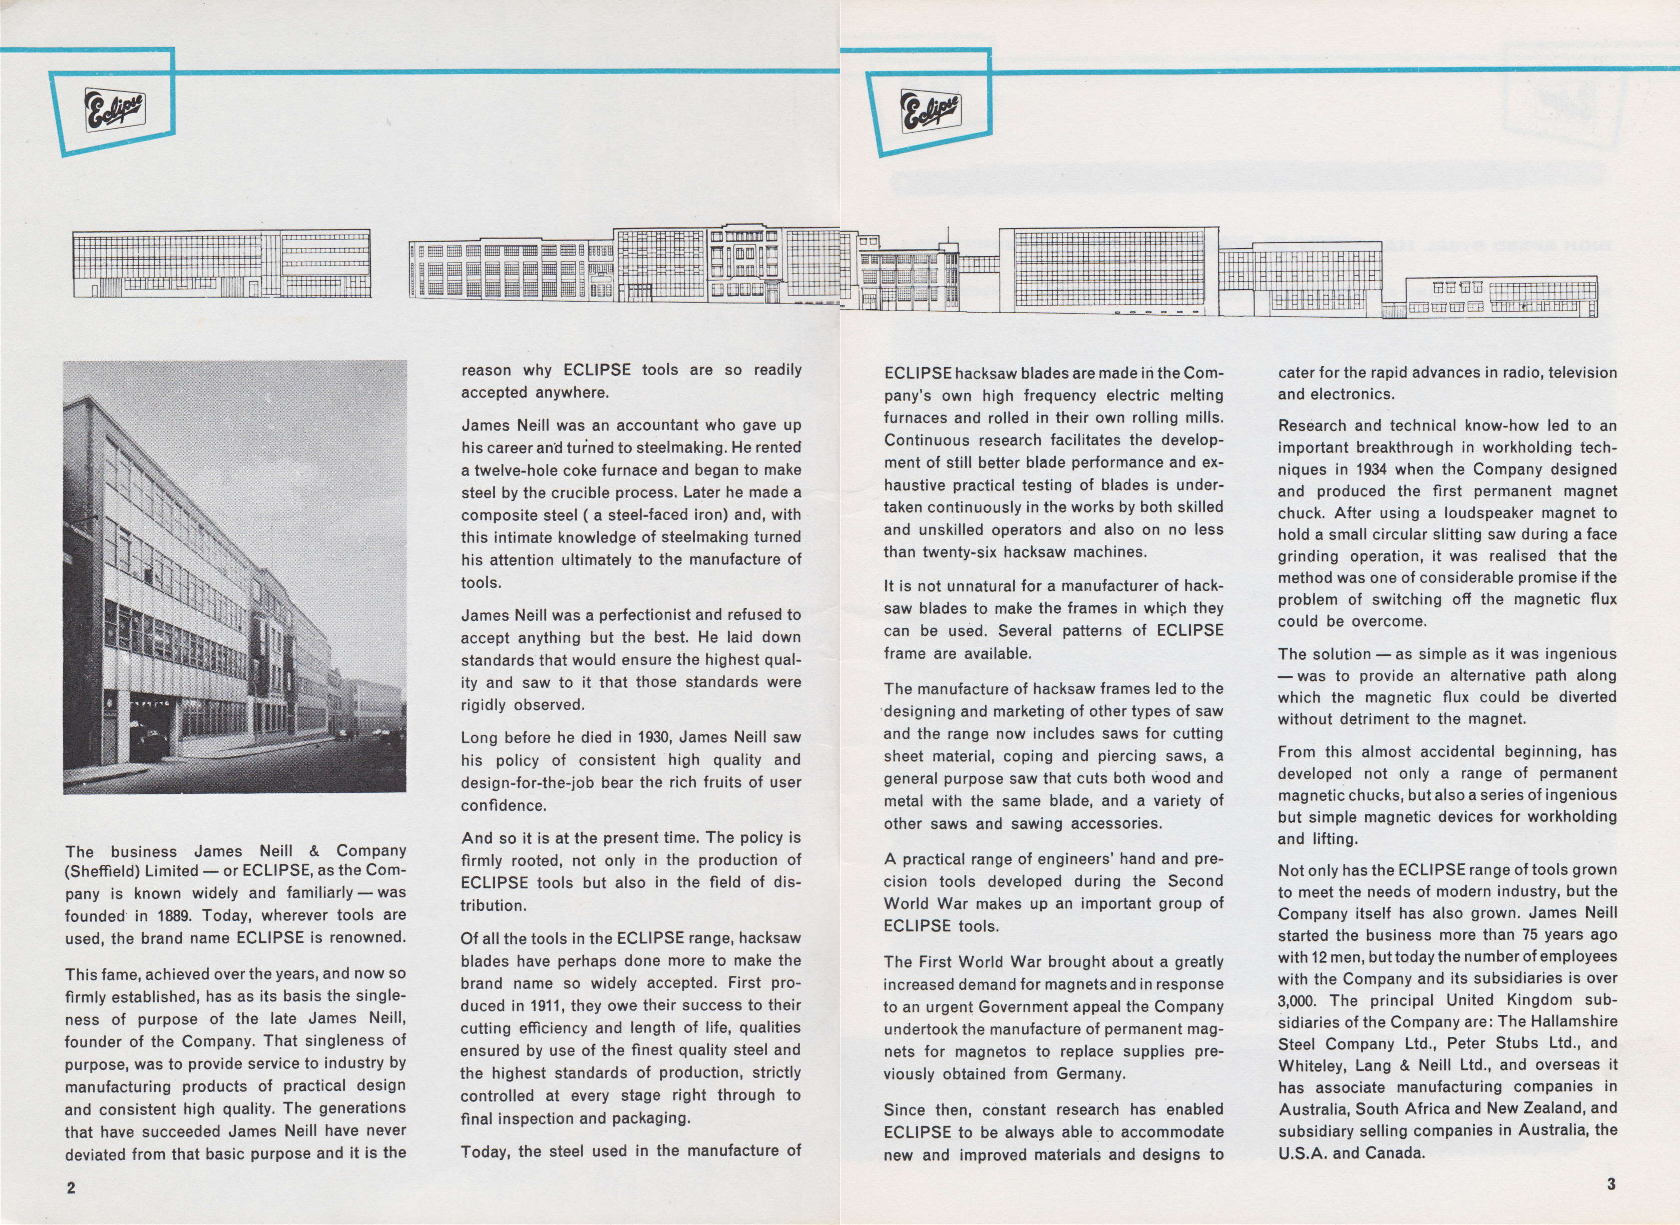 James Neill company history from a 1969 catalogue